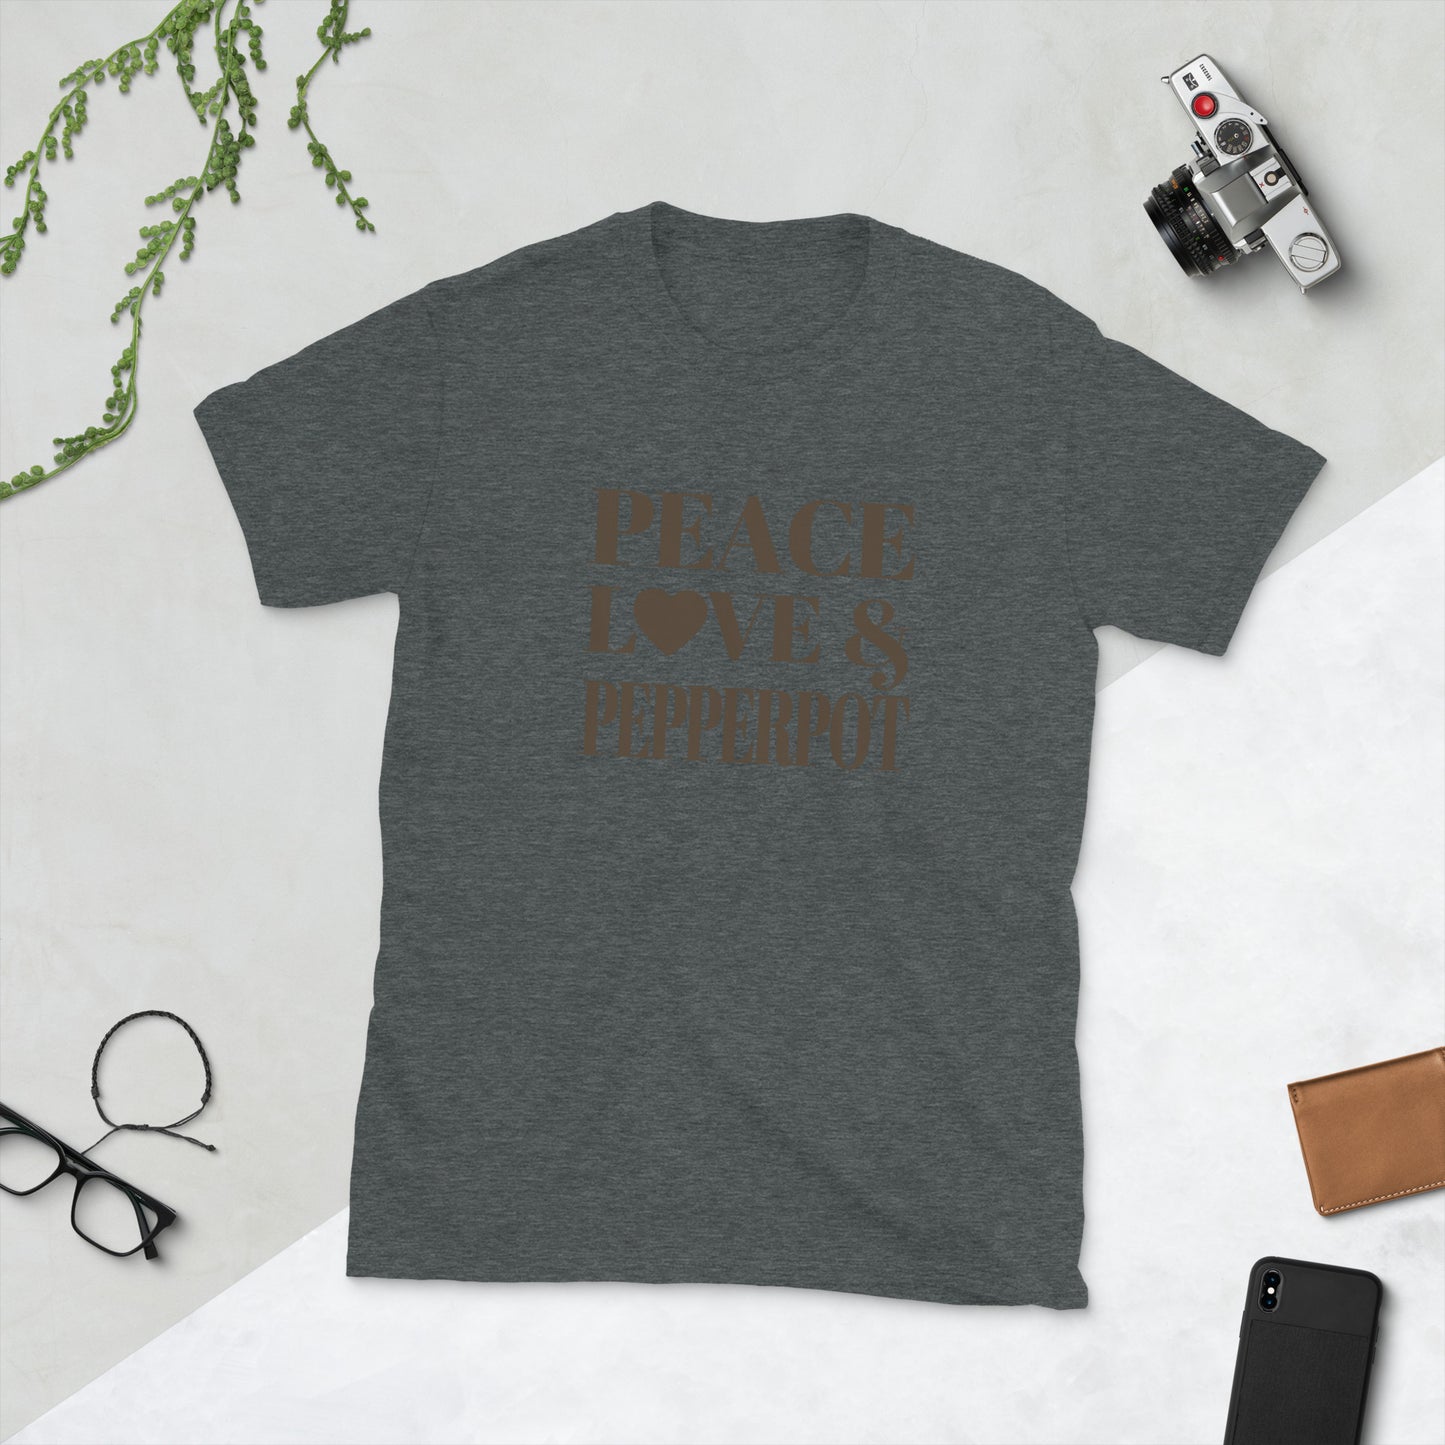 Peace, Love & Pepperpot Short-Sleeve Unisex T-Shirt